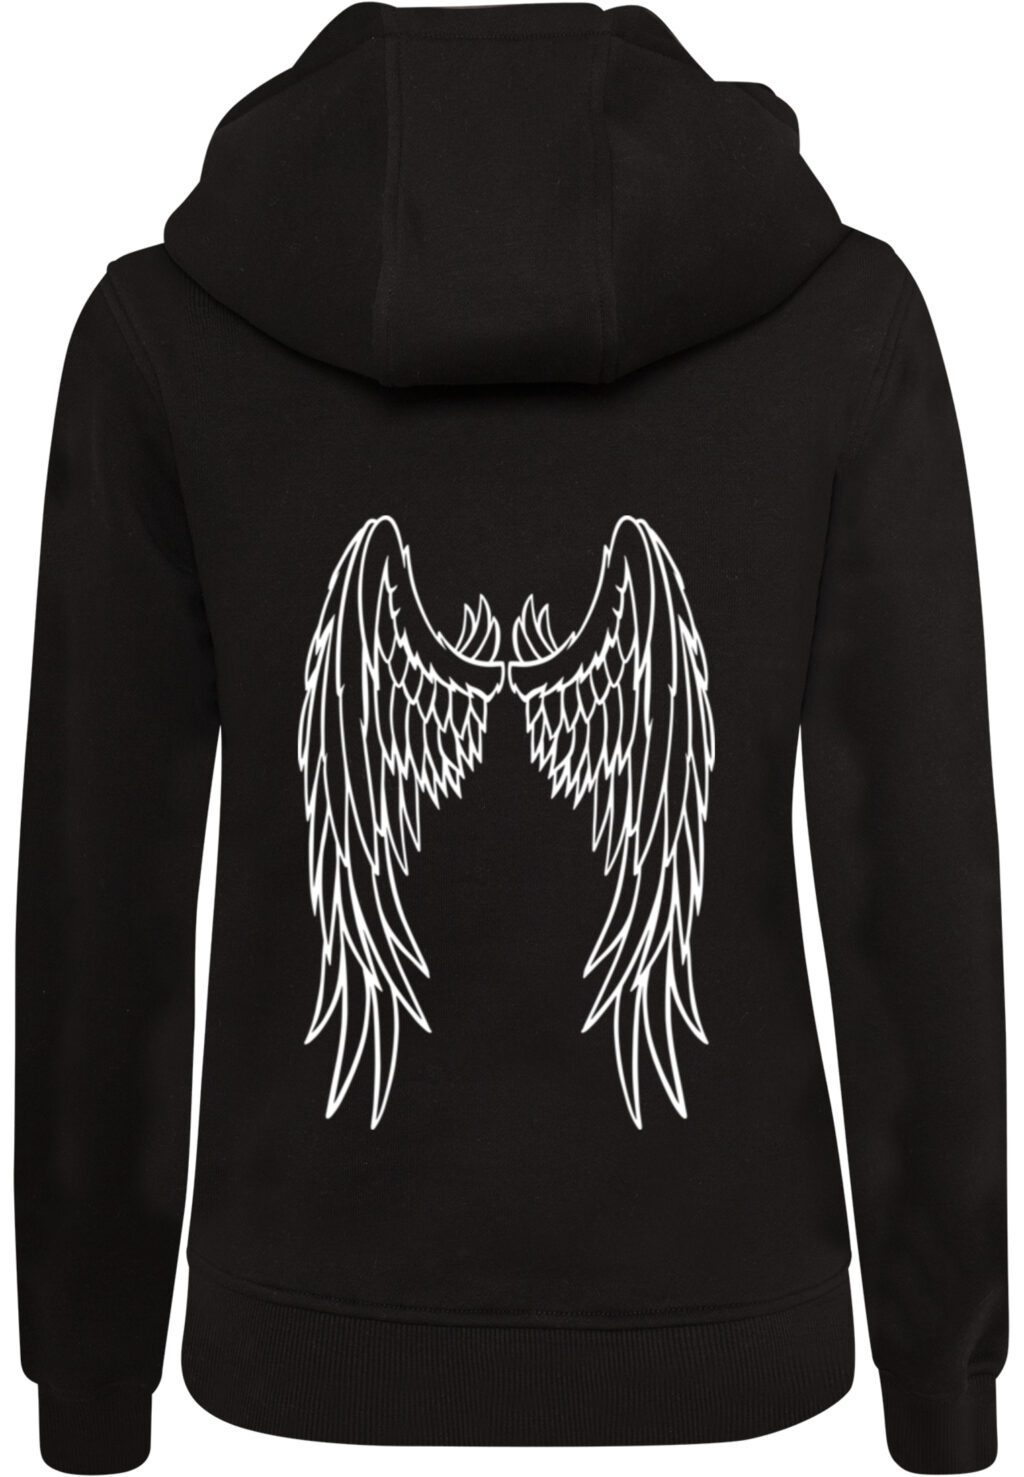 Angel Wings Hoody black MST058